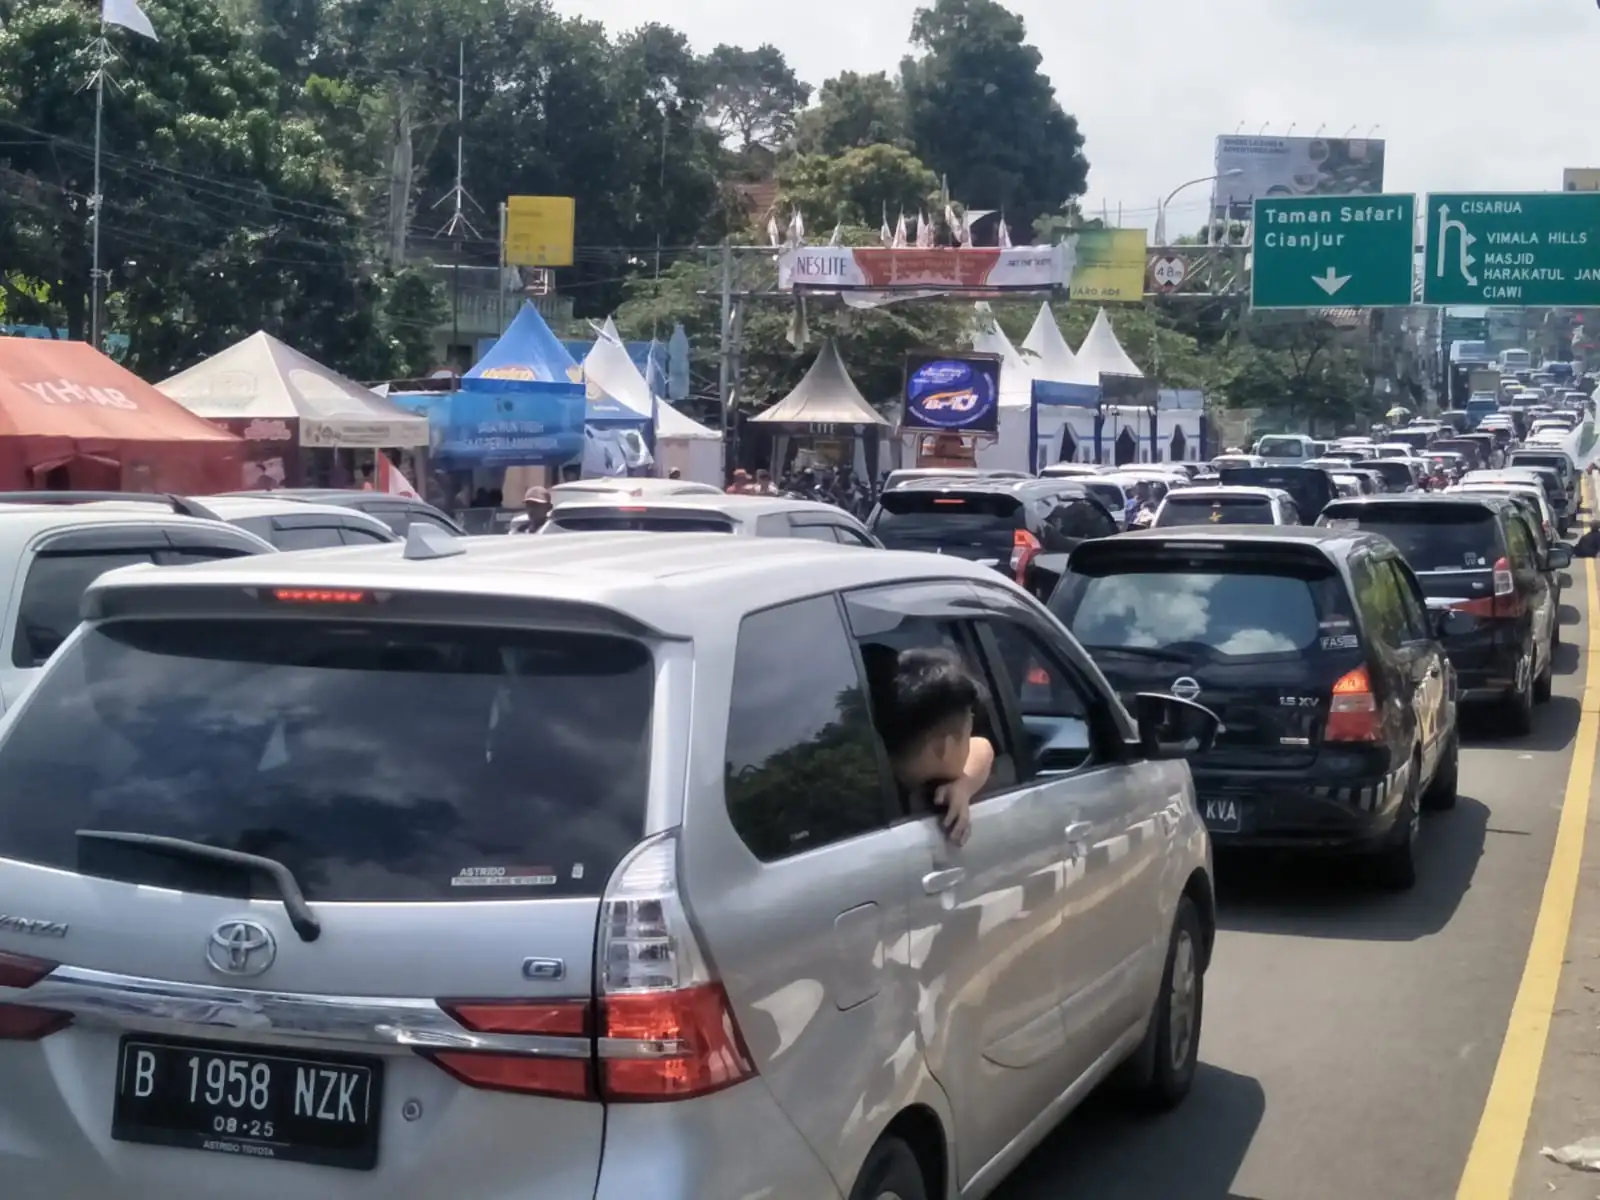 Diprediksi Kendaraan Meningkat Masuk Puncak Pada Akhir Pekan, Ini Yang Akan dilakukan Polres Bogor